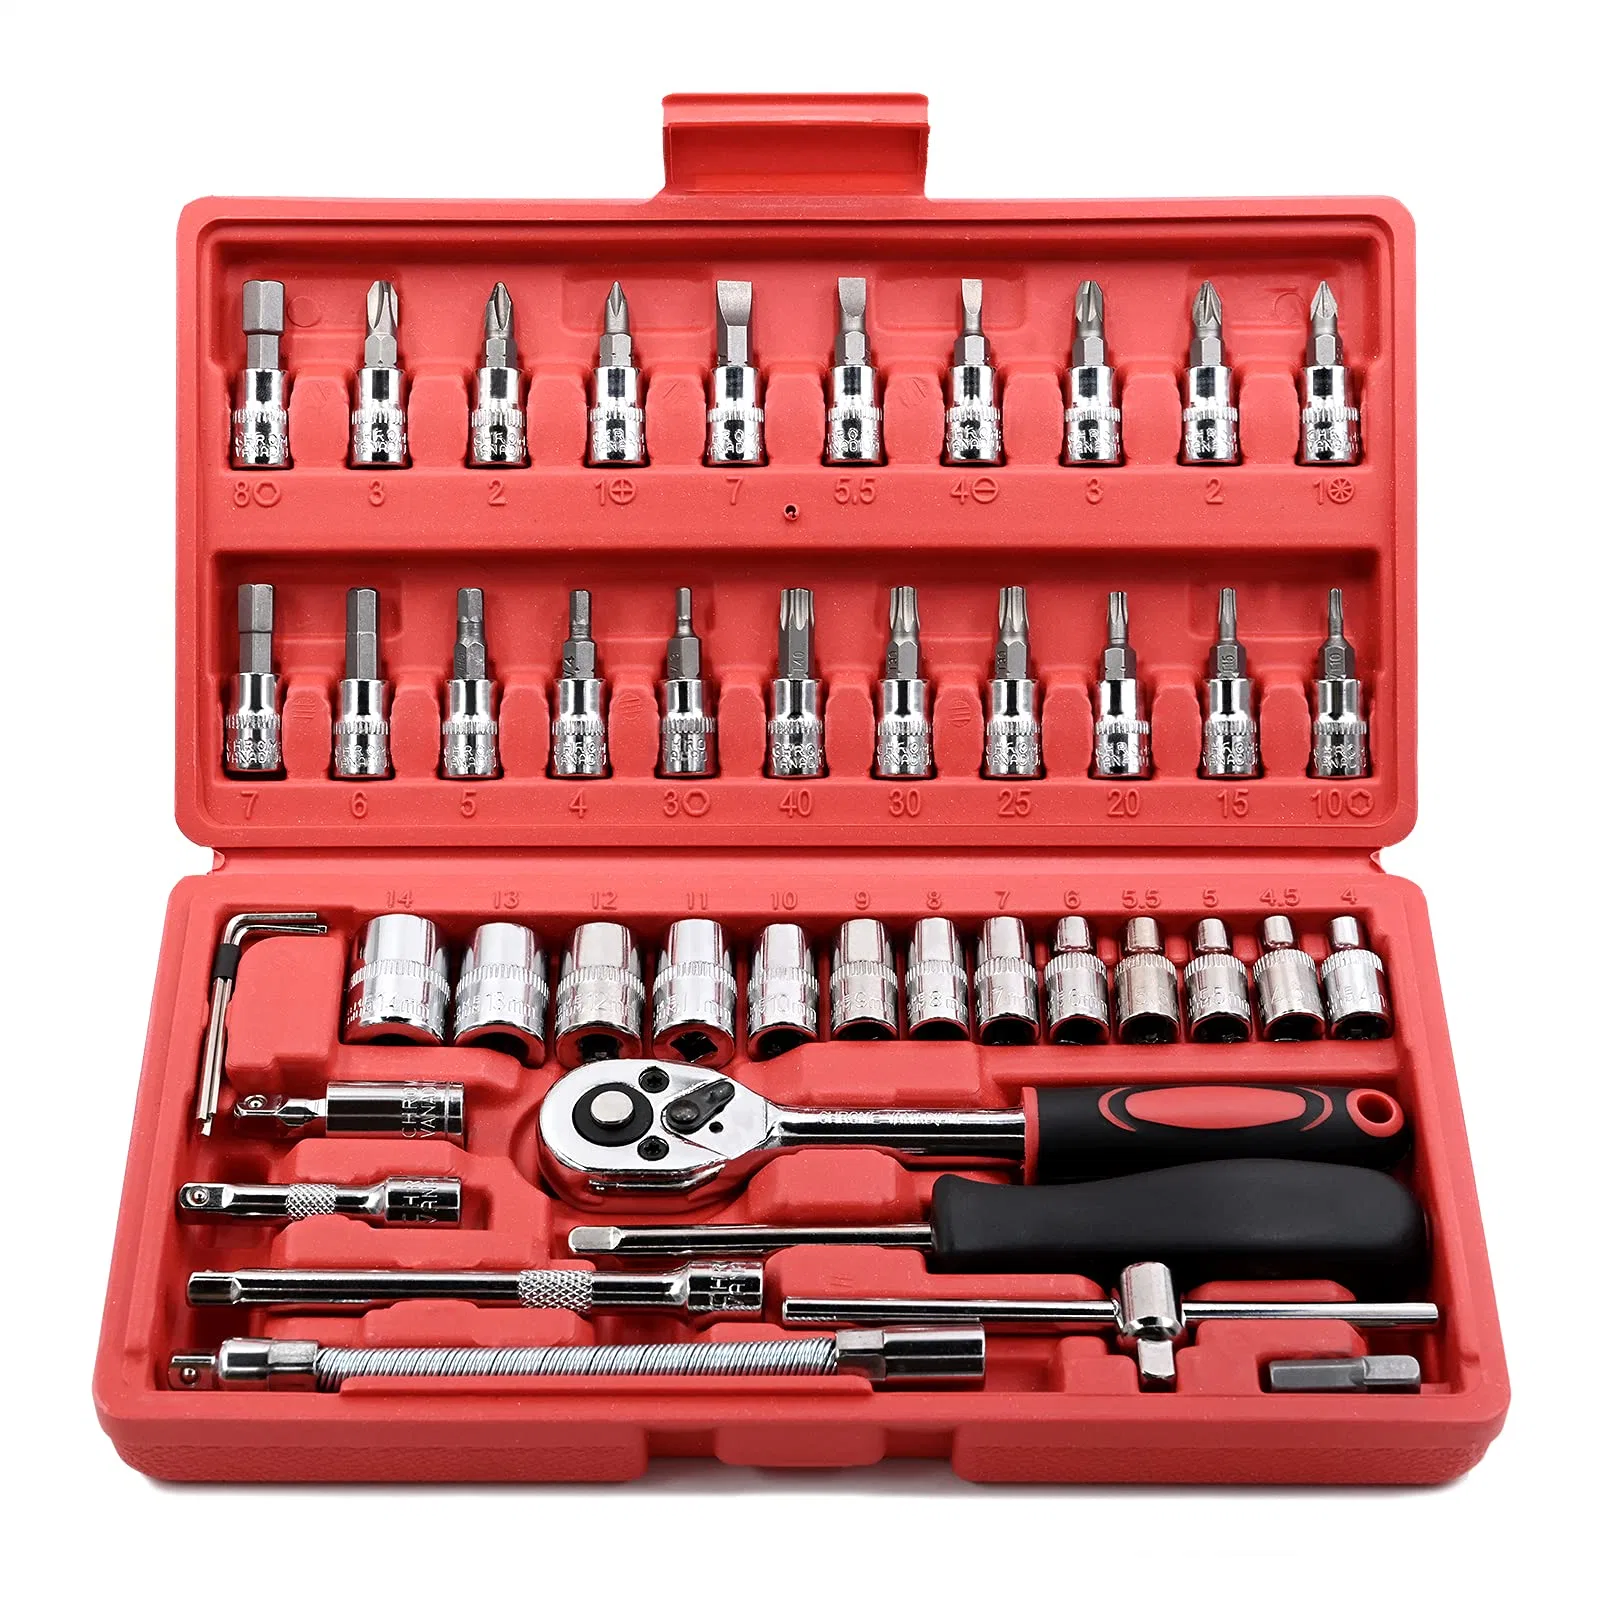 Household Car Repair Mechanics Hand Tool Box Herramientas Screwdriver Kit 46PCS Socket Wrench Set